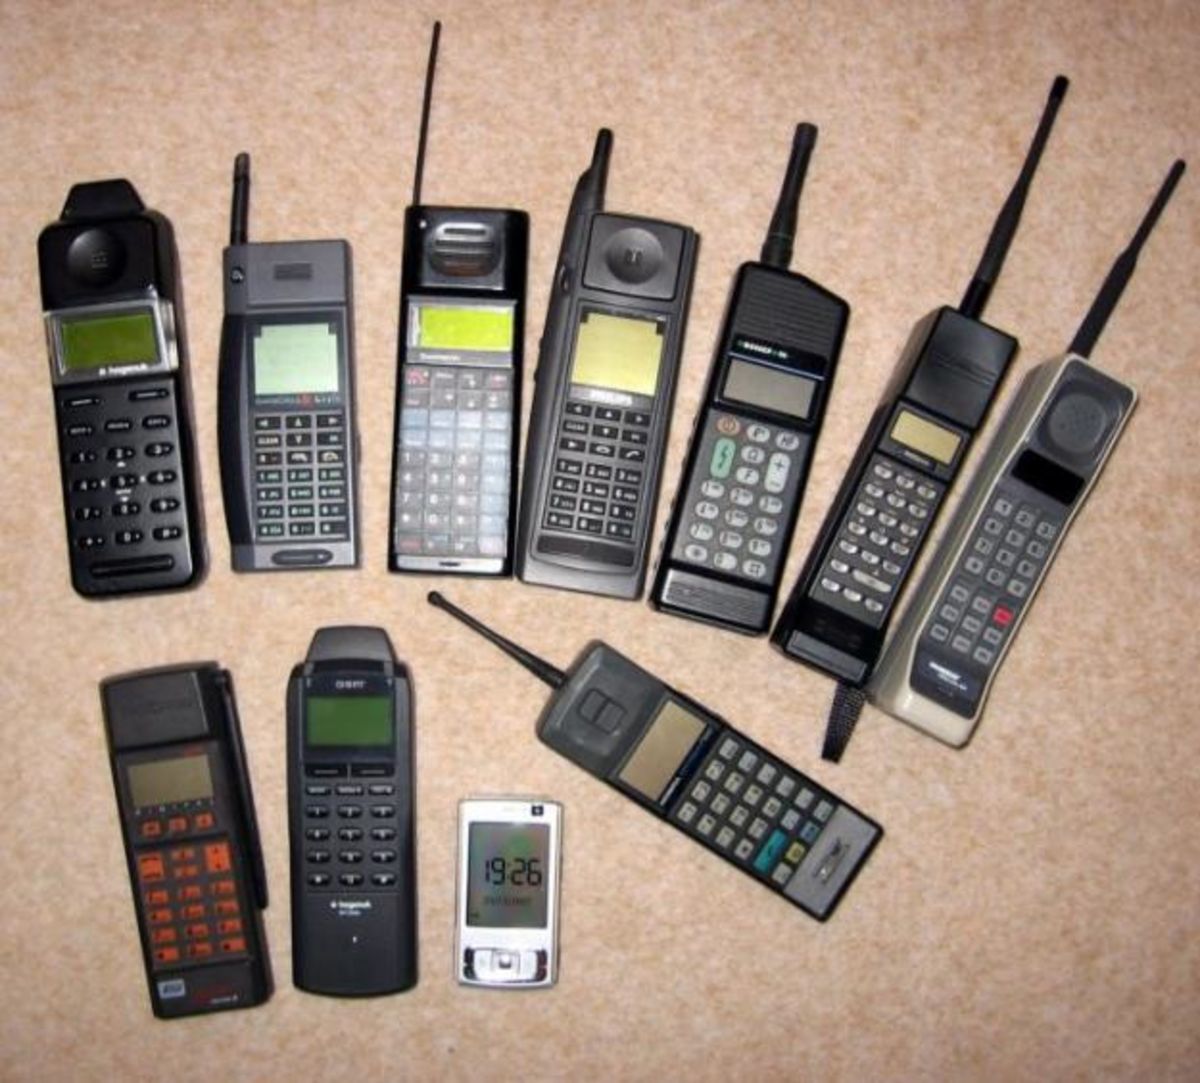 Старые новые мобильные телефоны. Радиотелефон сони в 90 х. Радиотелефон 90 х нокиа. Мобильники Сименс 90-х. Nokia Mobira md59–nb2 (1991 год).